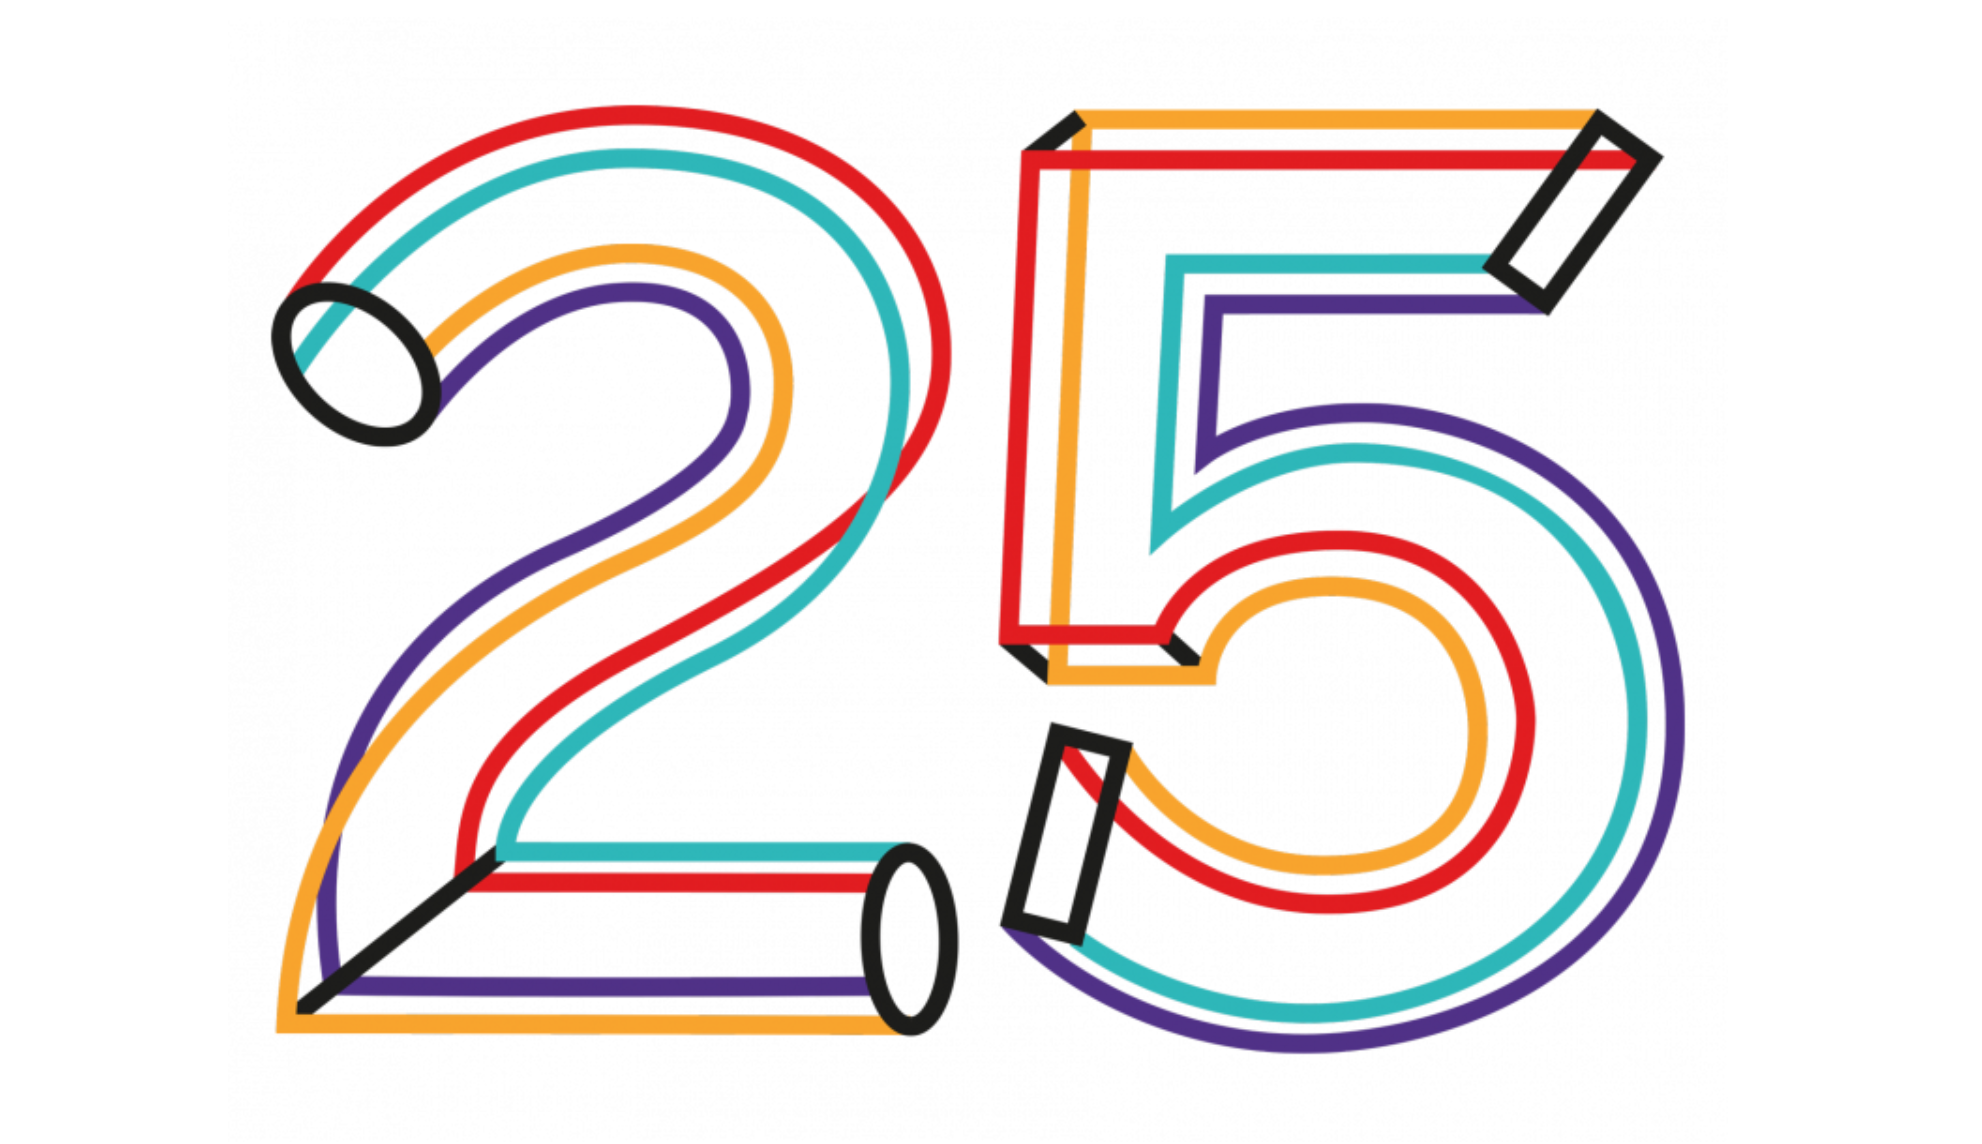 25 jaar waag logo 